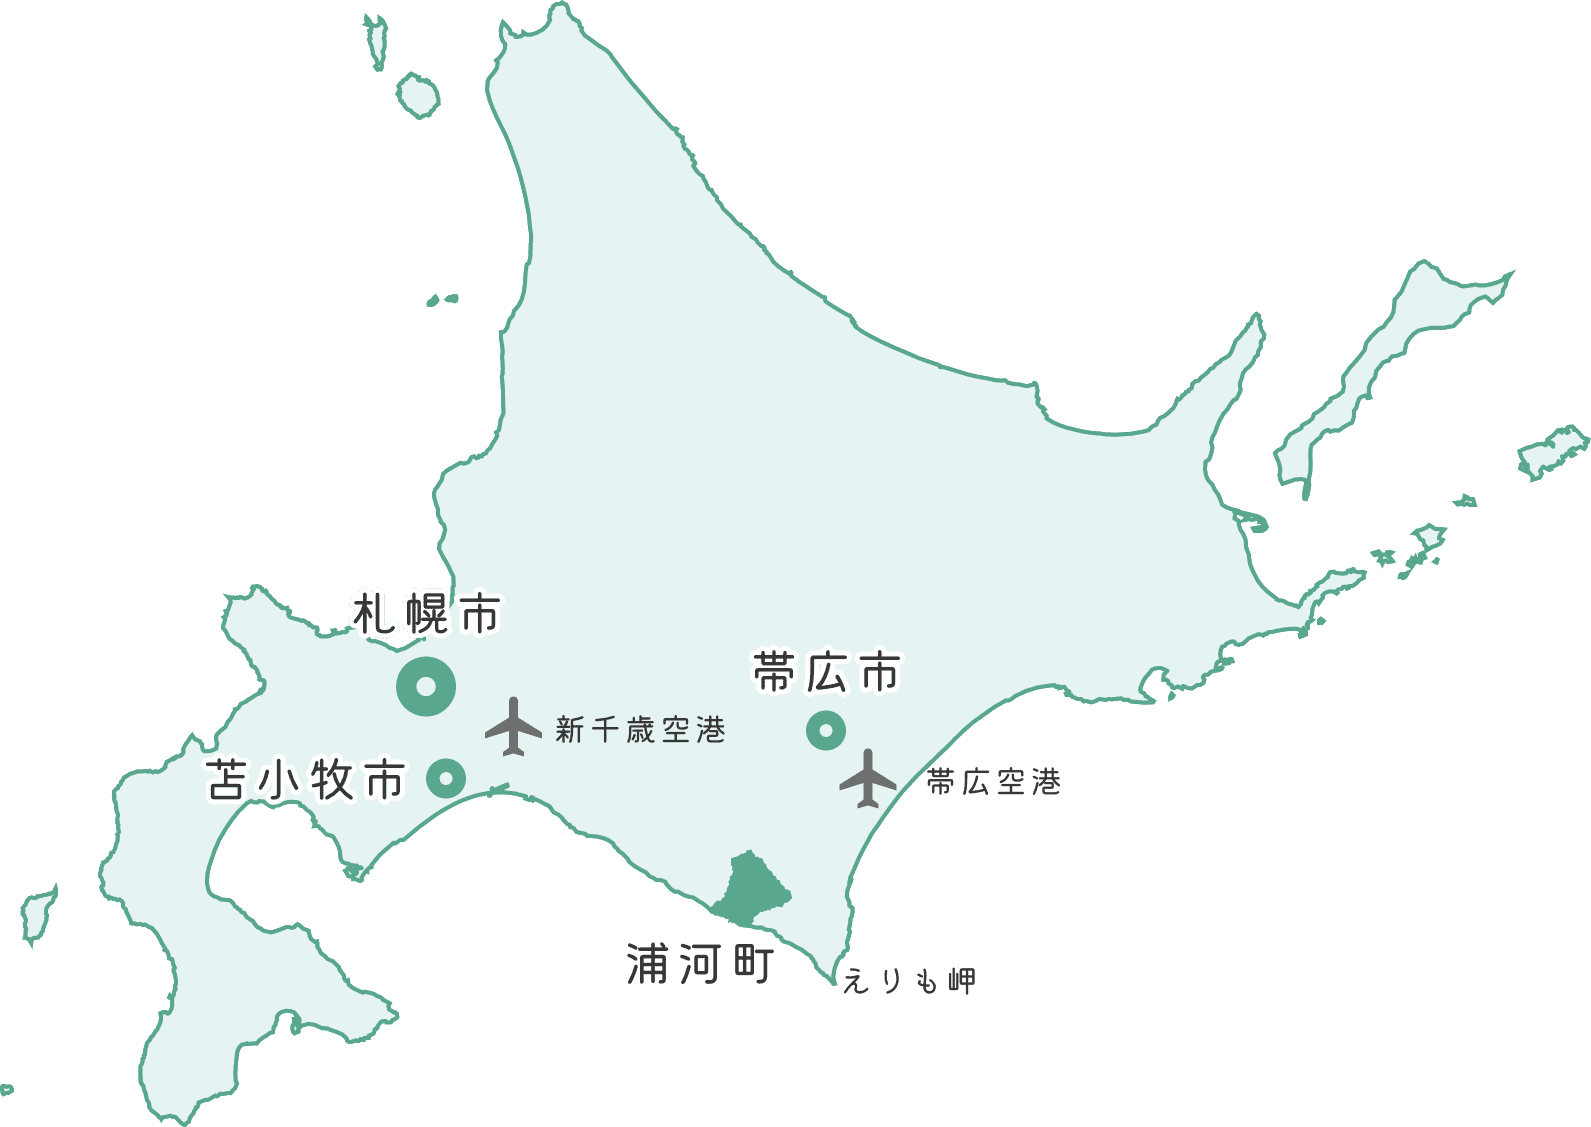 北海道内の浦河町の位置を示した地図